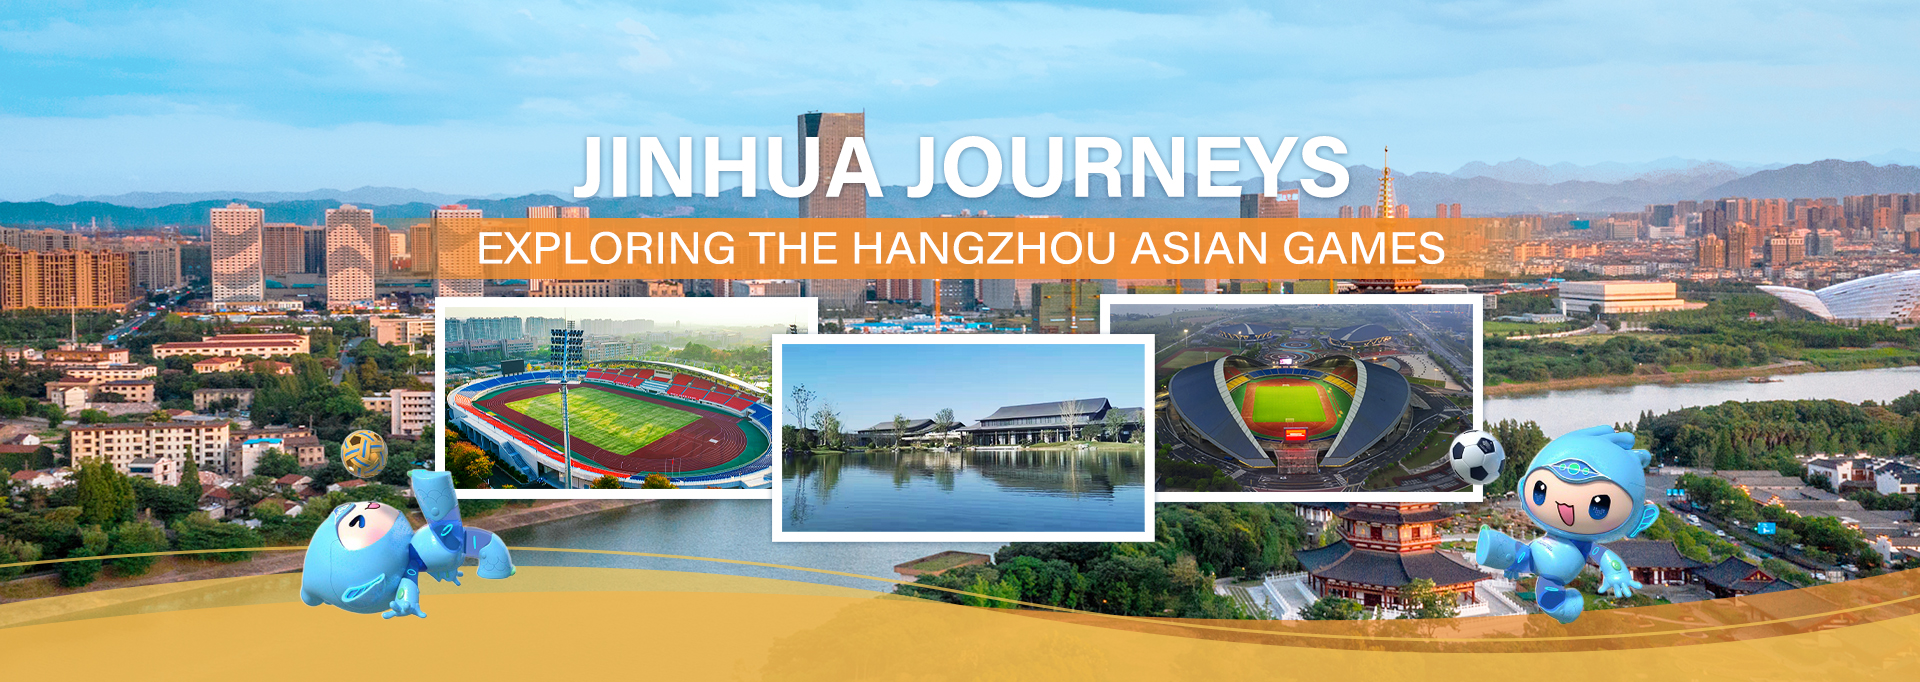 Jinhua Journeys: Exploring the Hangzhou Asian Games